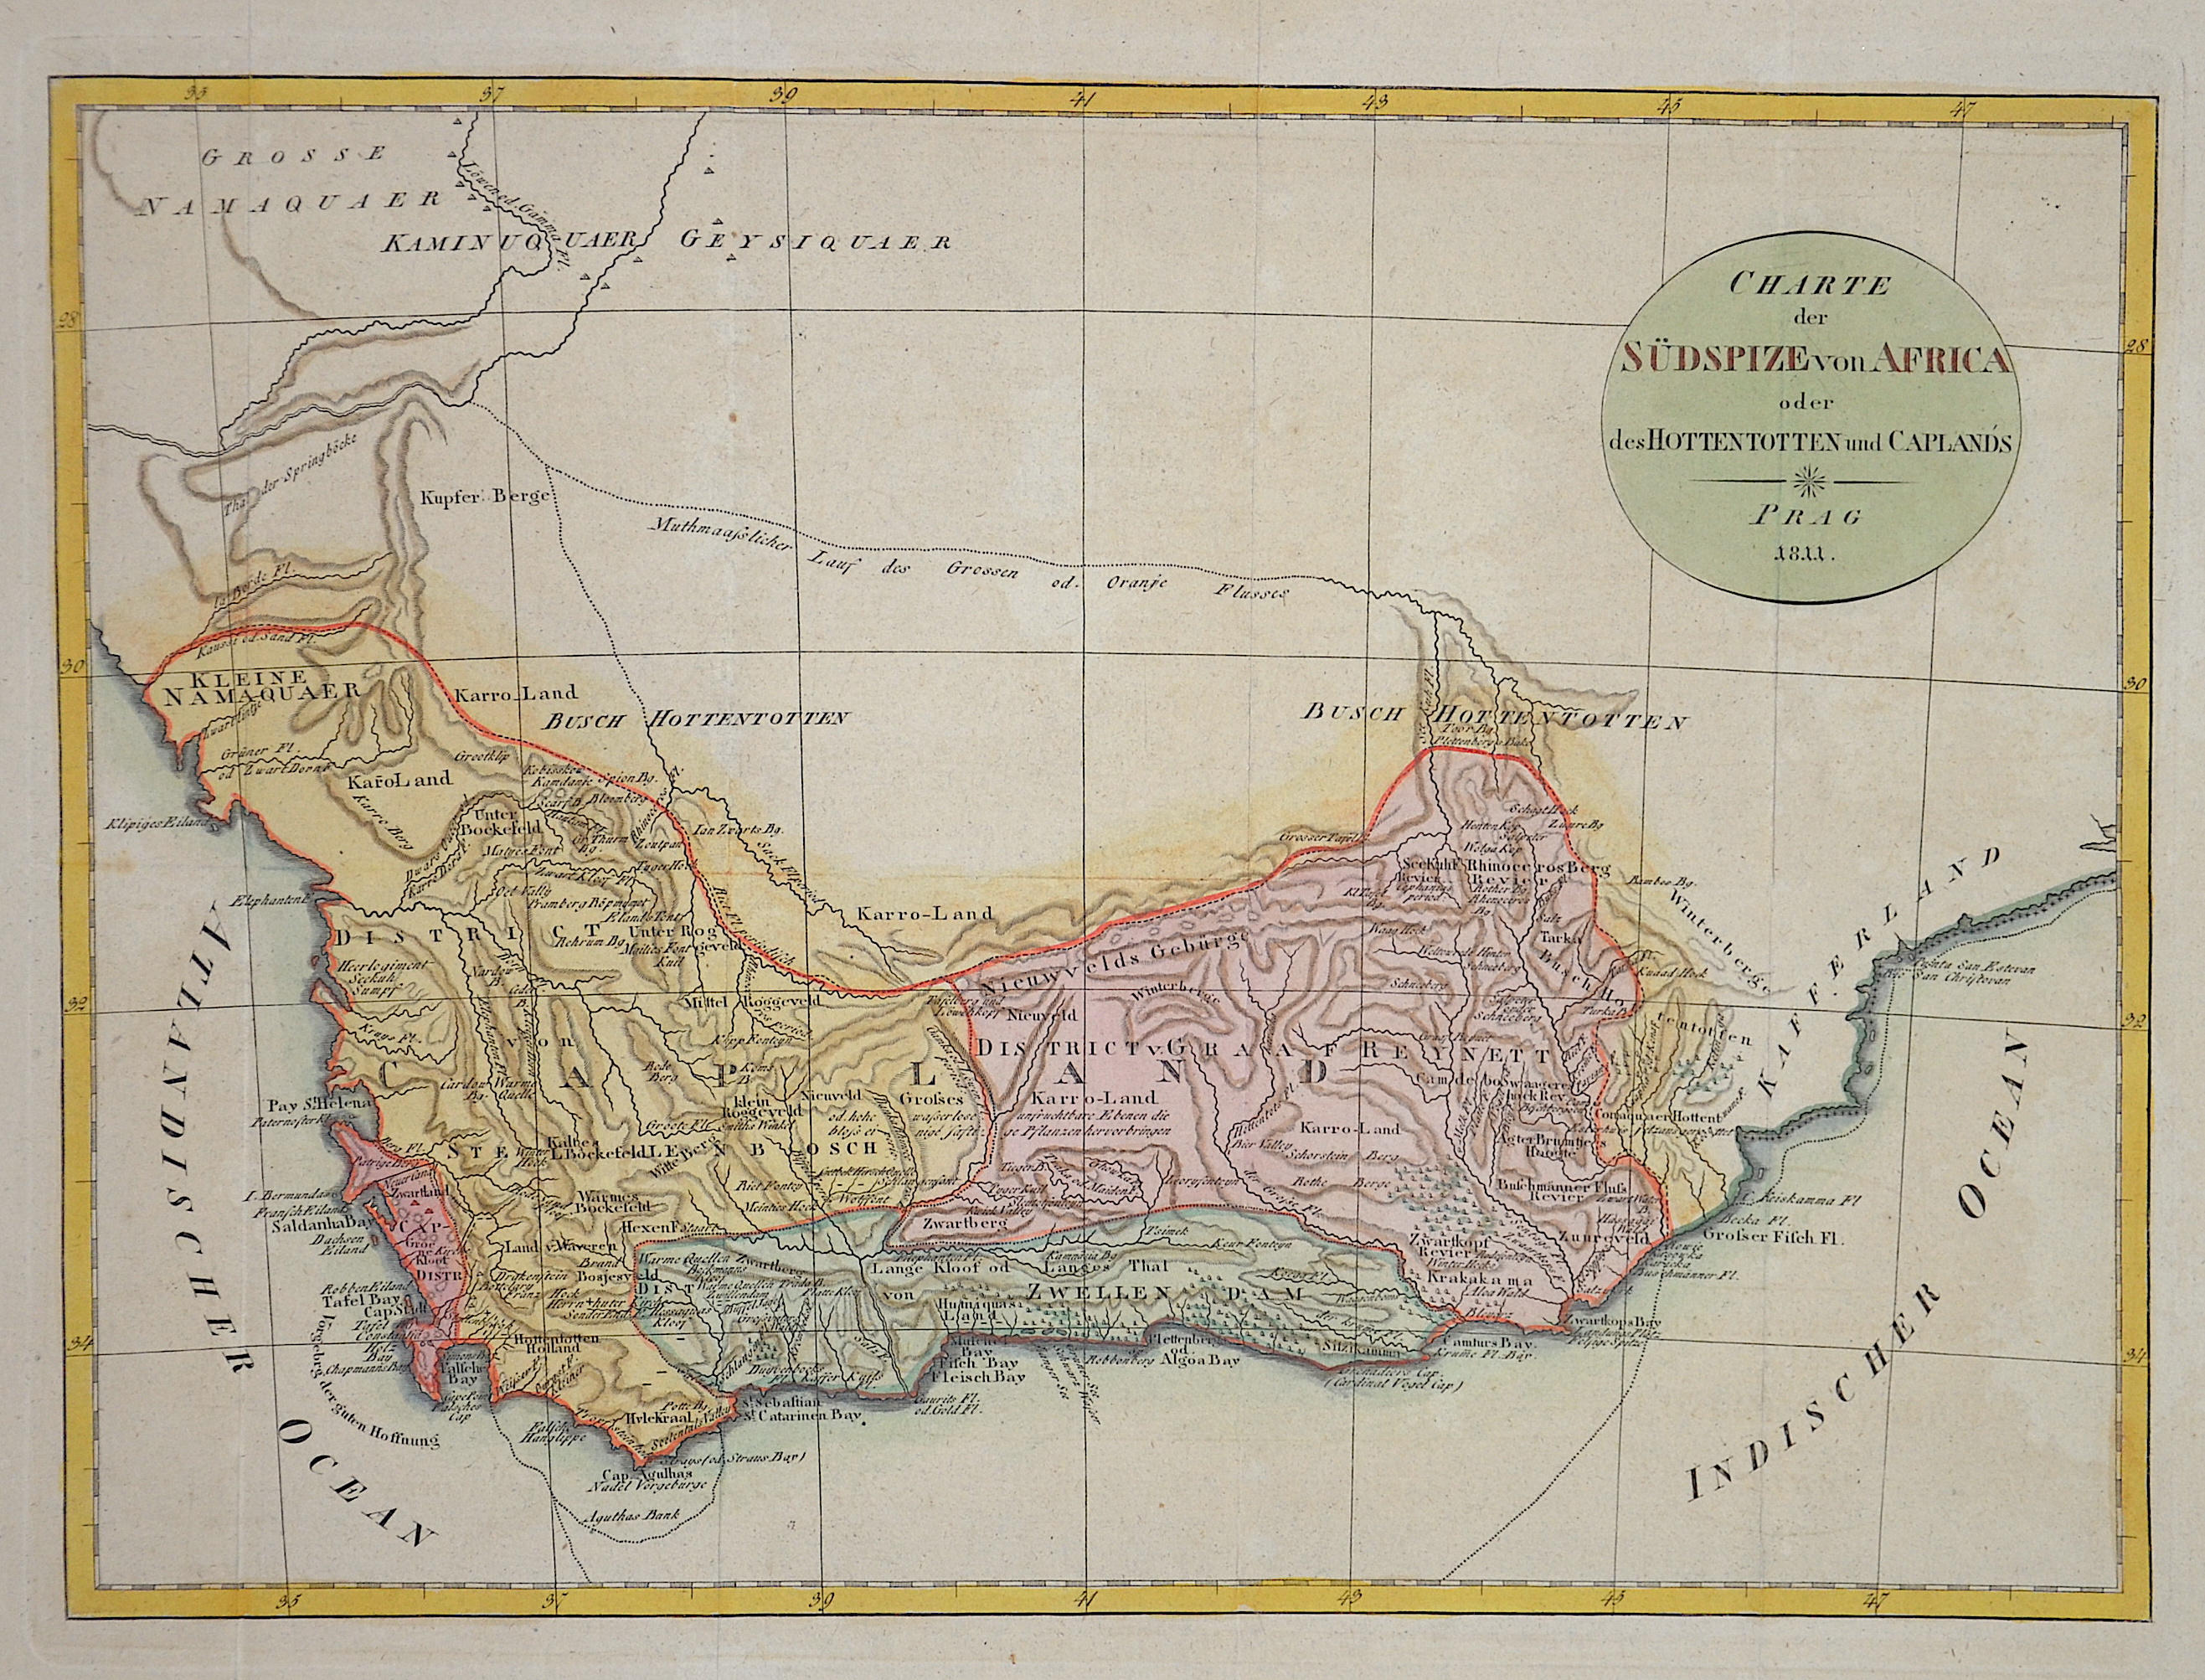 Reilly Franz Johann Joseph Charte der Südspize von Africa oder des Hottentotten und Caplands